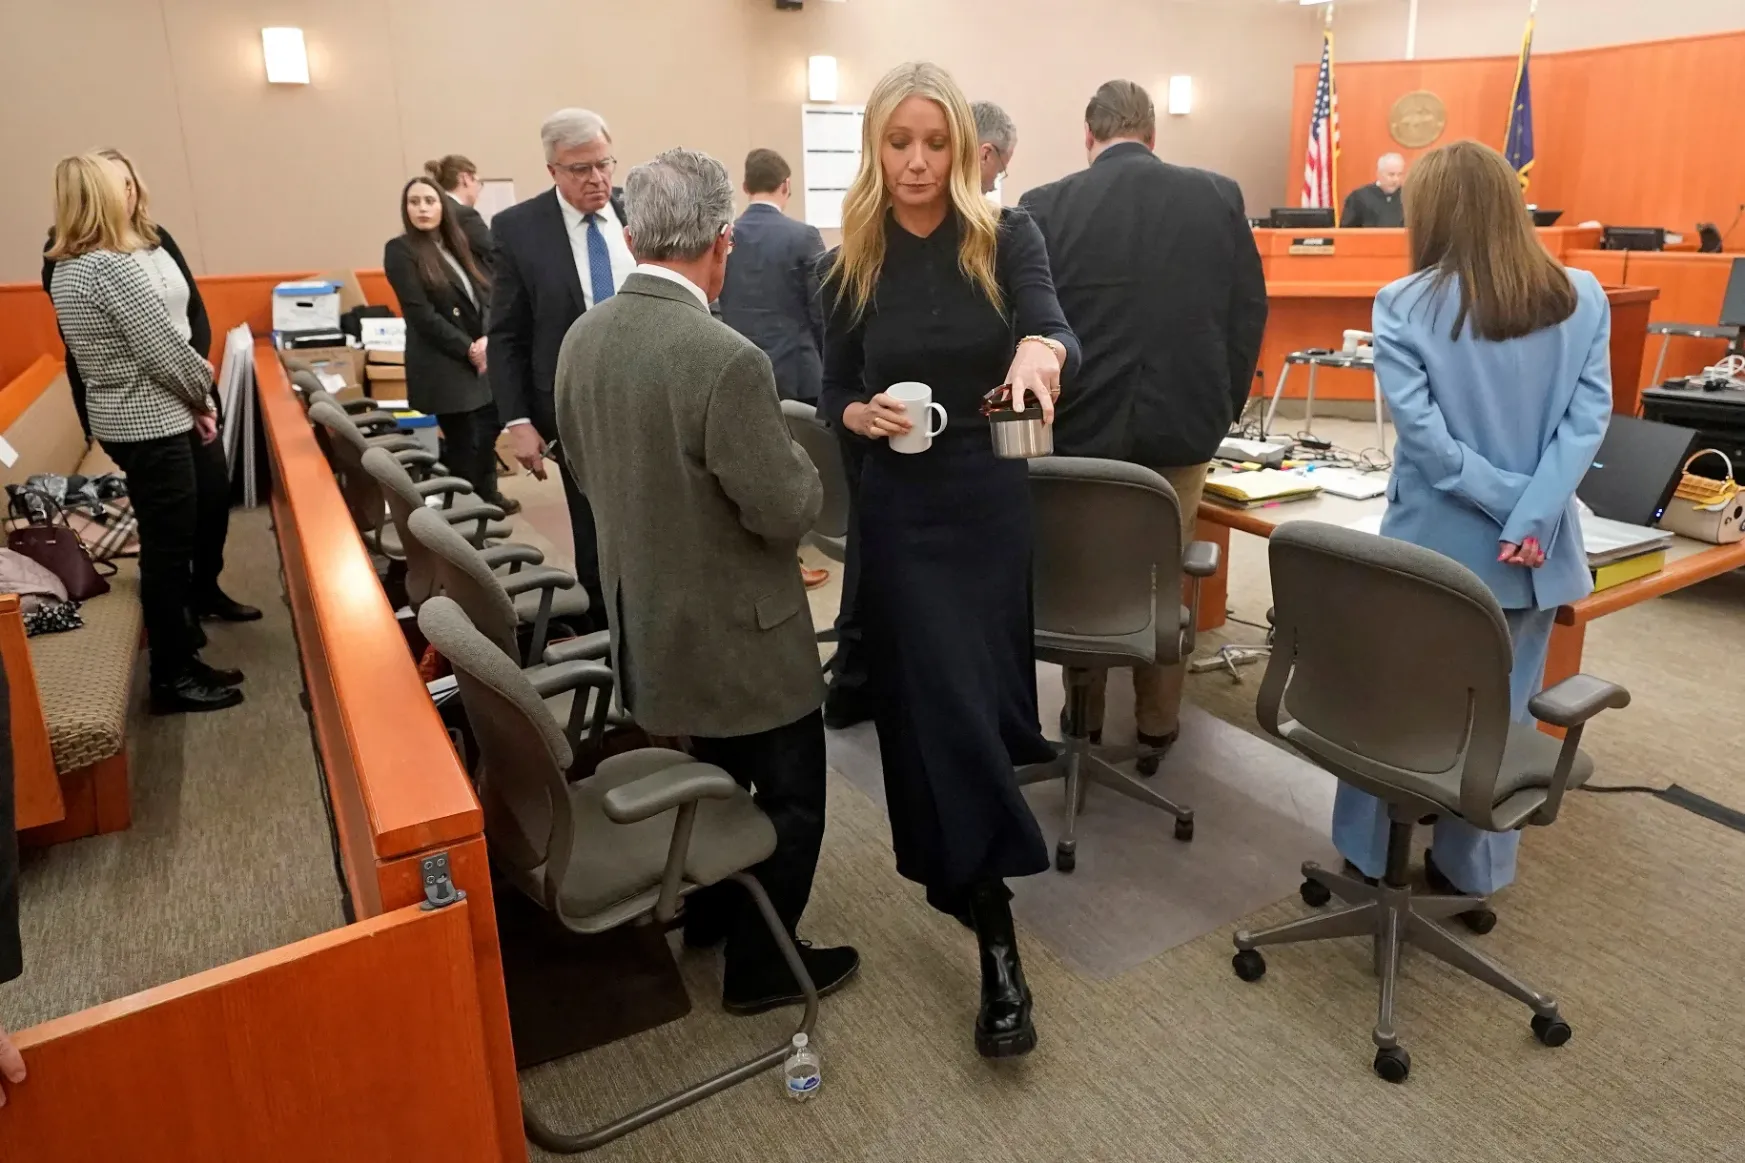 Gwyneth Paltrow színésznő tagadta a bíróságon, hogy ő okozta volna a 2016-os síbalesetet